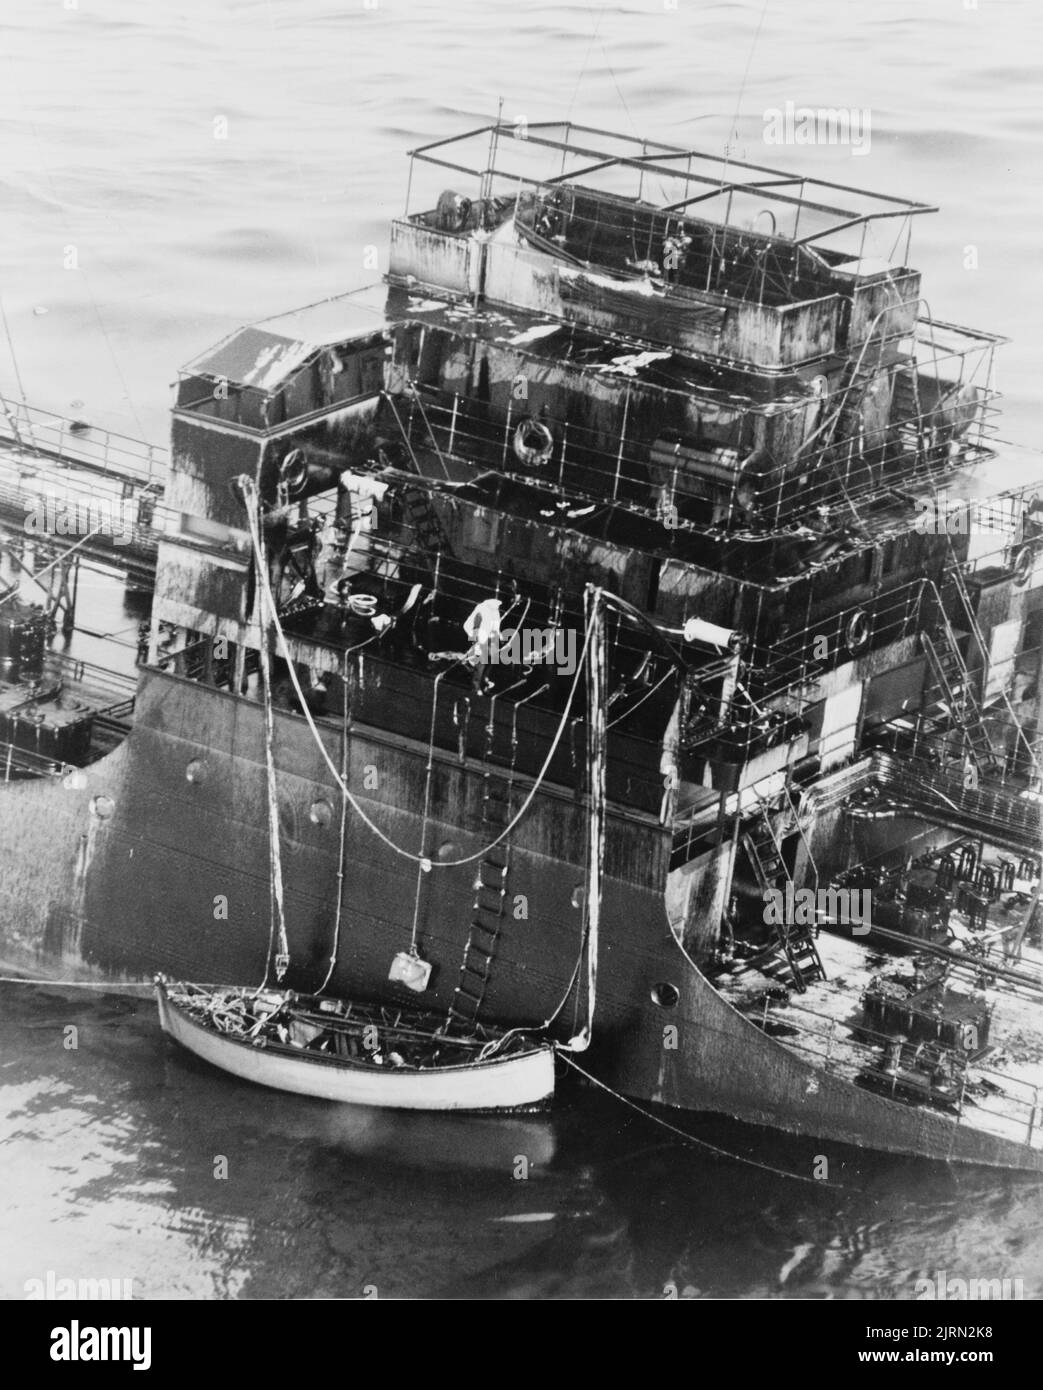 Ein Vintage-Foto aus dem Jahr 1942, das zeigt, dass ein Handelsschiff nach der Torpedoroführung eines deutschen U-Bootes bei der Überquerung des Atlantischen Ozeans während des Zweiten Weltkriegs untergeht. Die Besatzung hat ein Rettungsboot abgesenkt und versucht, das Schiff zu verlassen Stockfoto